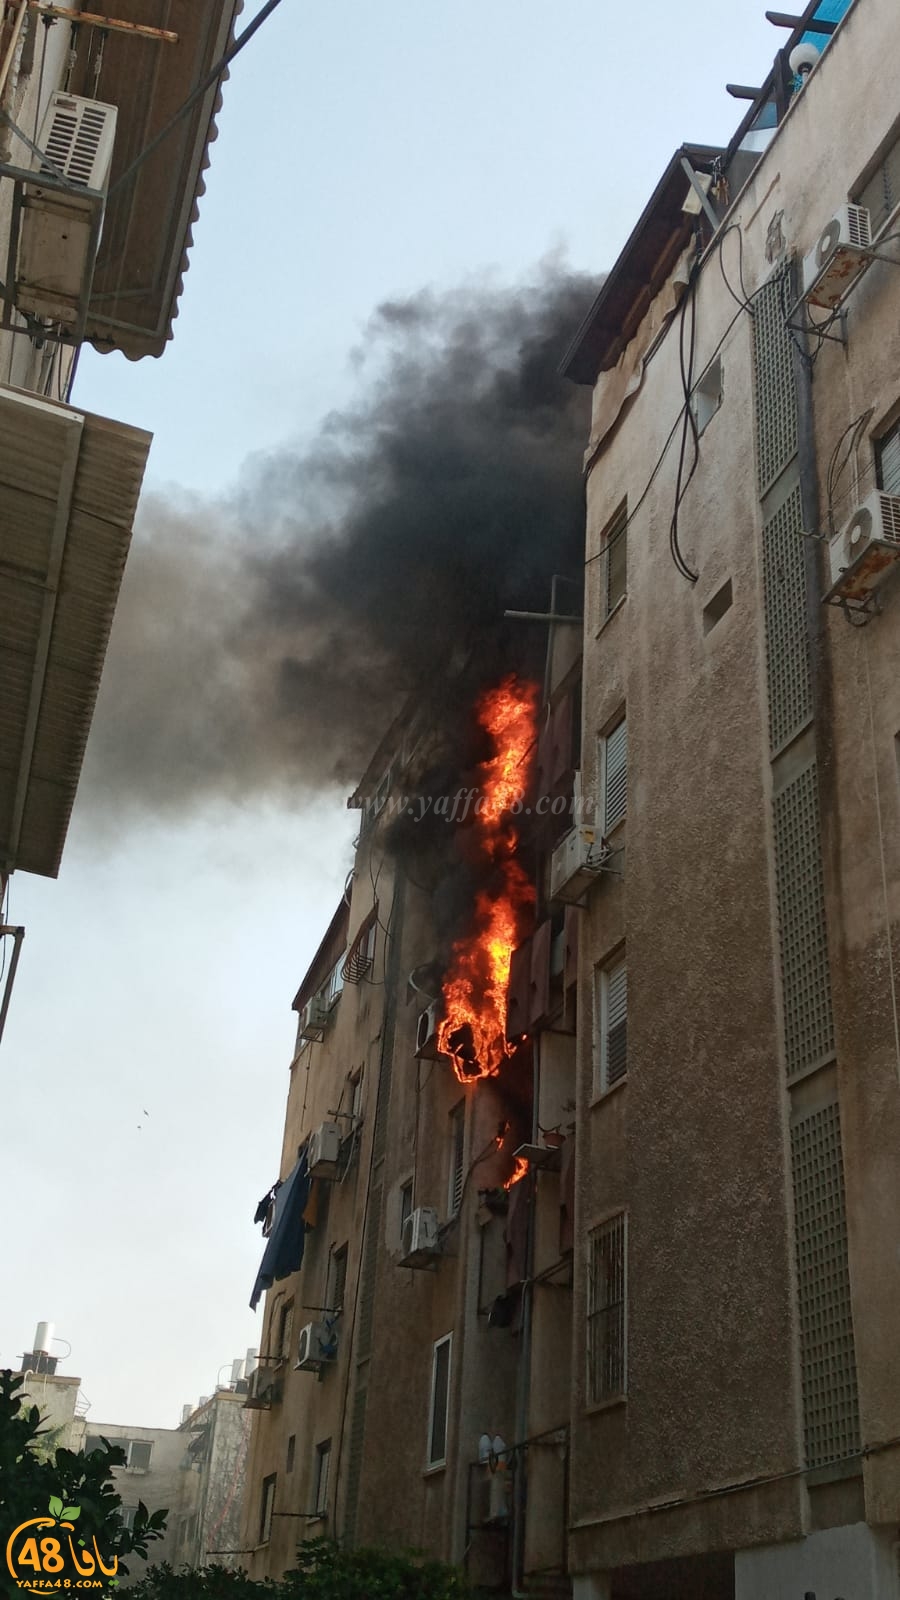   فيديو: حريق داخل بناية سكنية بيافا يتسبب بأضرار مادية لخمس شقق